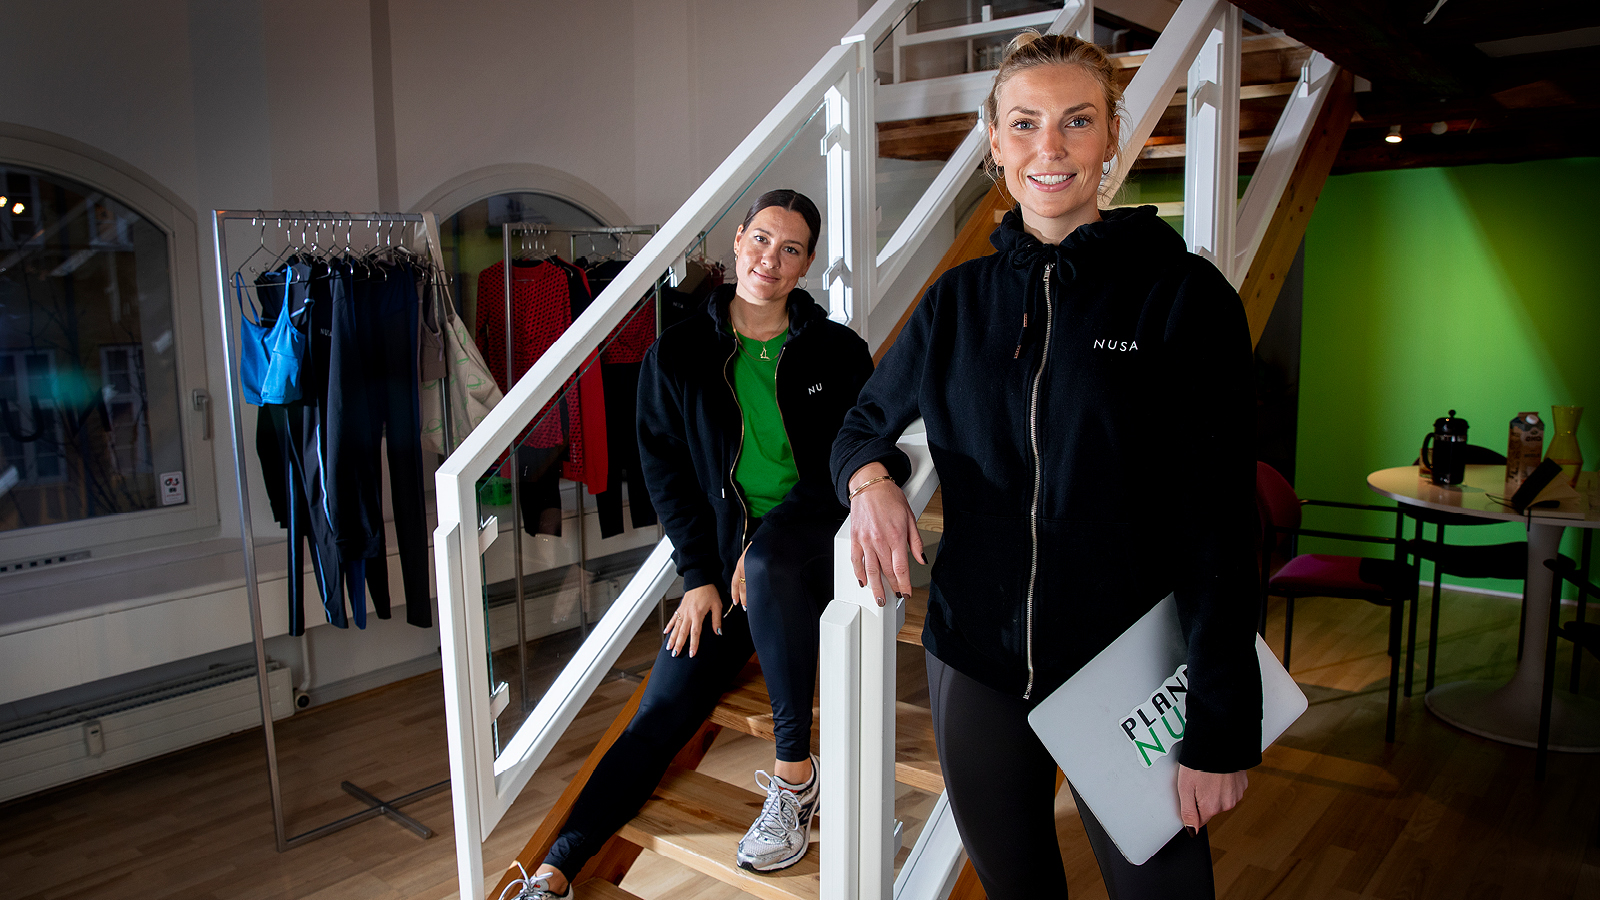 Bliv forvirret sko snave Kristine Esmer og Mille Skat sælger bæredygtigt sportstøj - DI